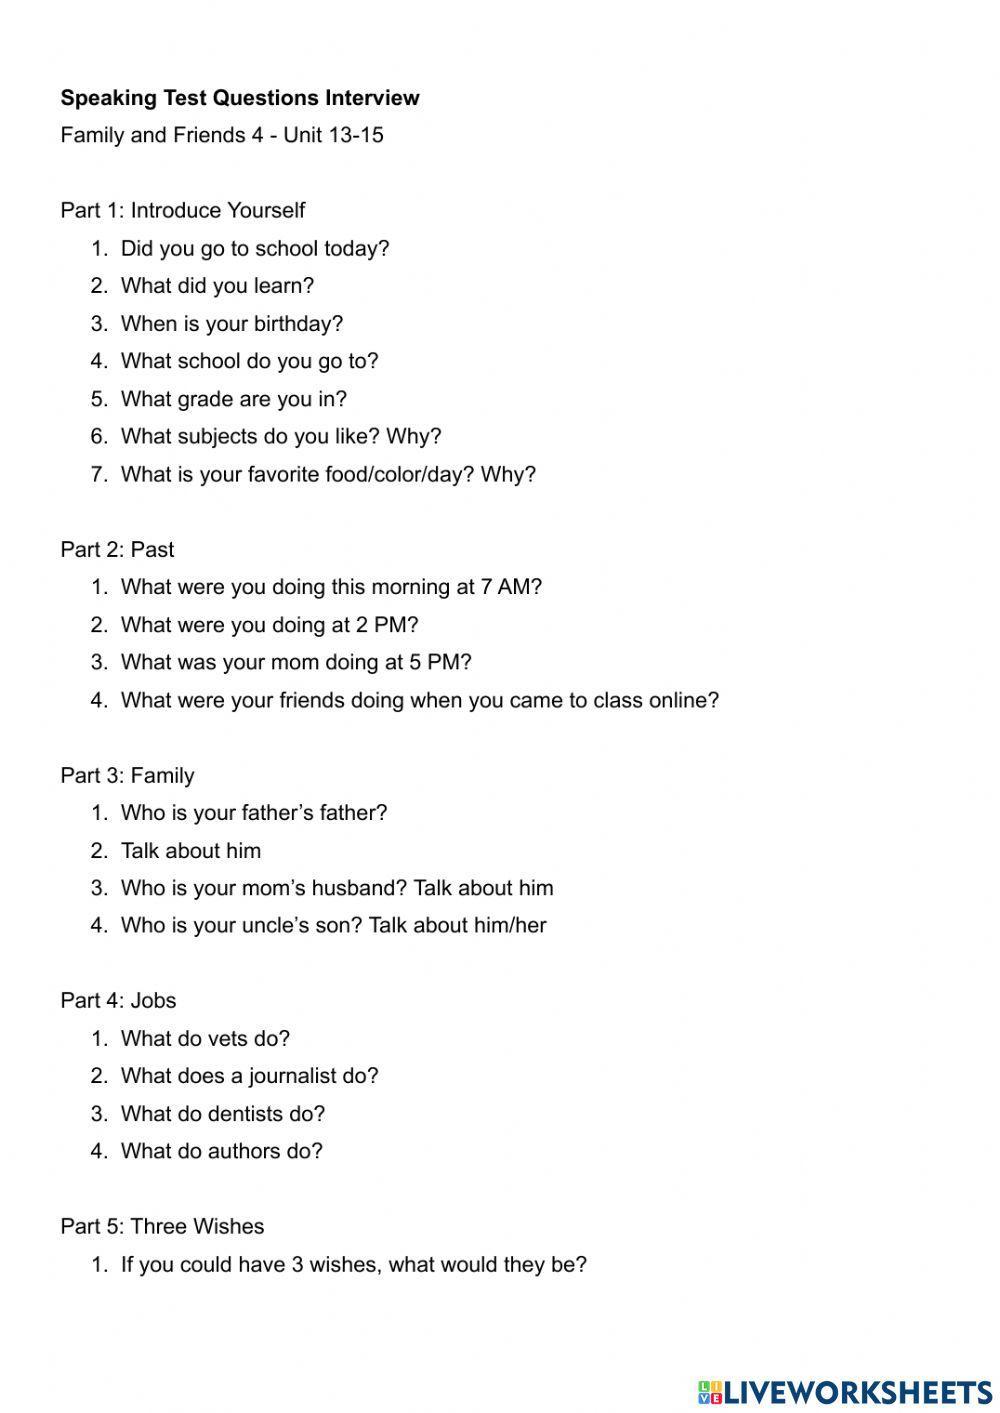 FF4 Speaking Test Questions Unit 13-15 worksheet | Live Worksheets